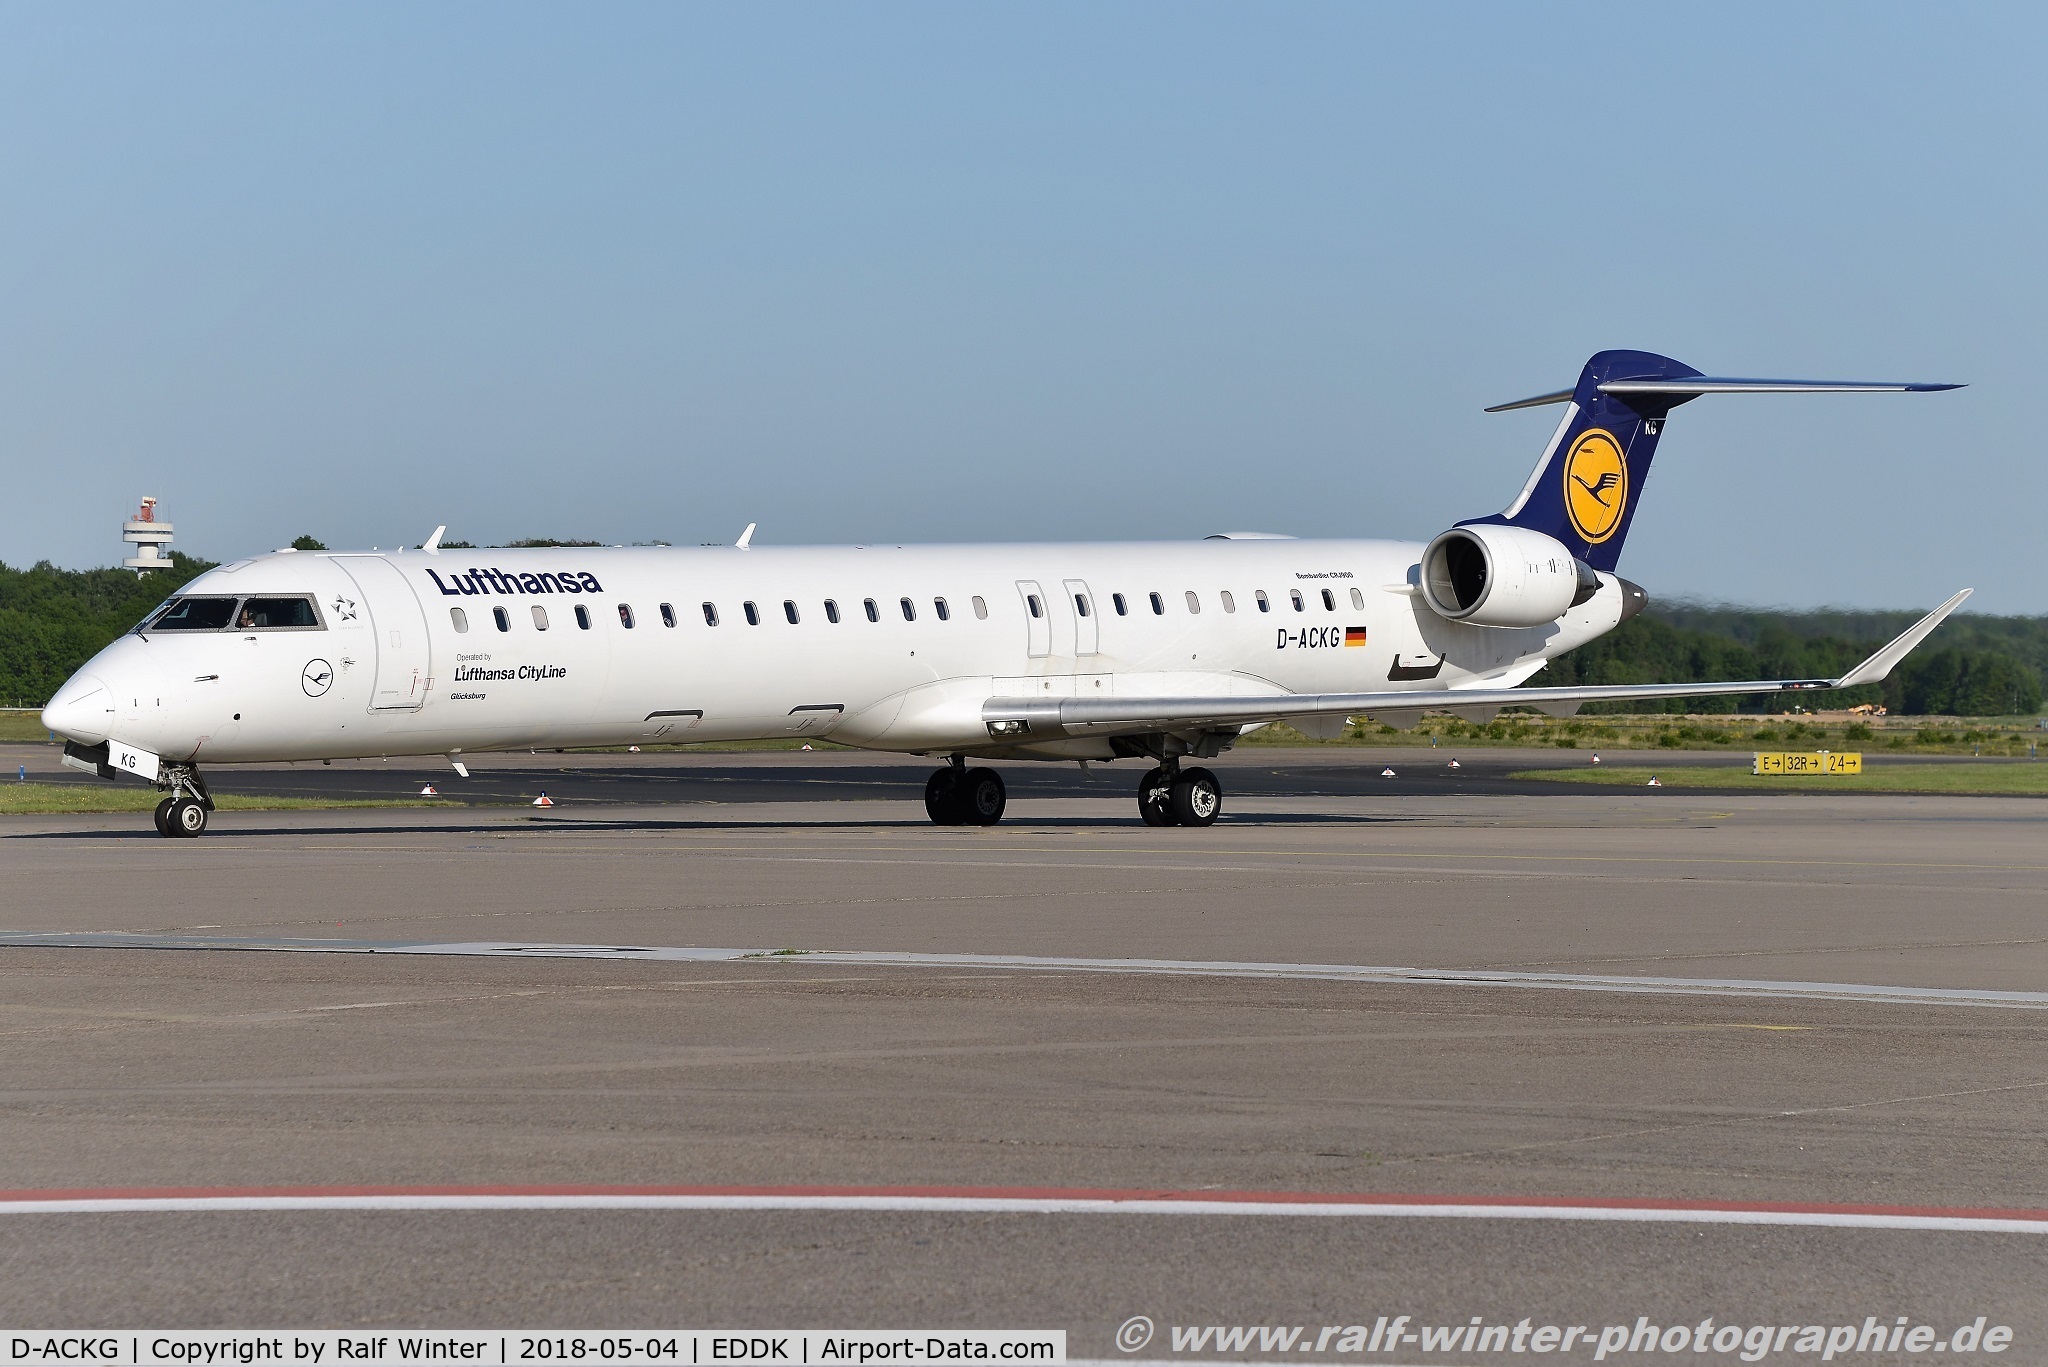 D-ACKG, 2006 Bombardier CRJ-900LR (CL-600-2D24) C/N 15084, Bombardier CL-600-2D24 CRJ 900 - CL CLH Lufthansa CityLine 'Gluecksburg - 15084 - D-ACKG - 04.05.2018 - CGN